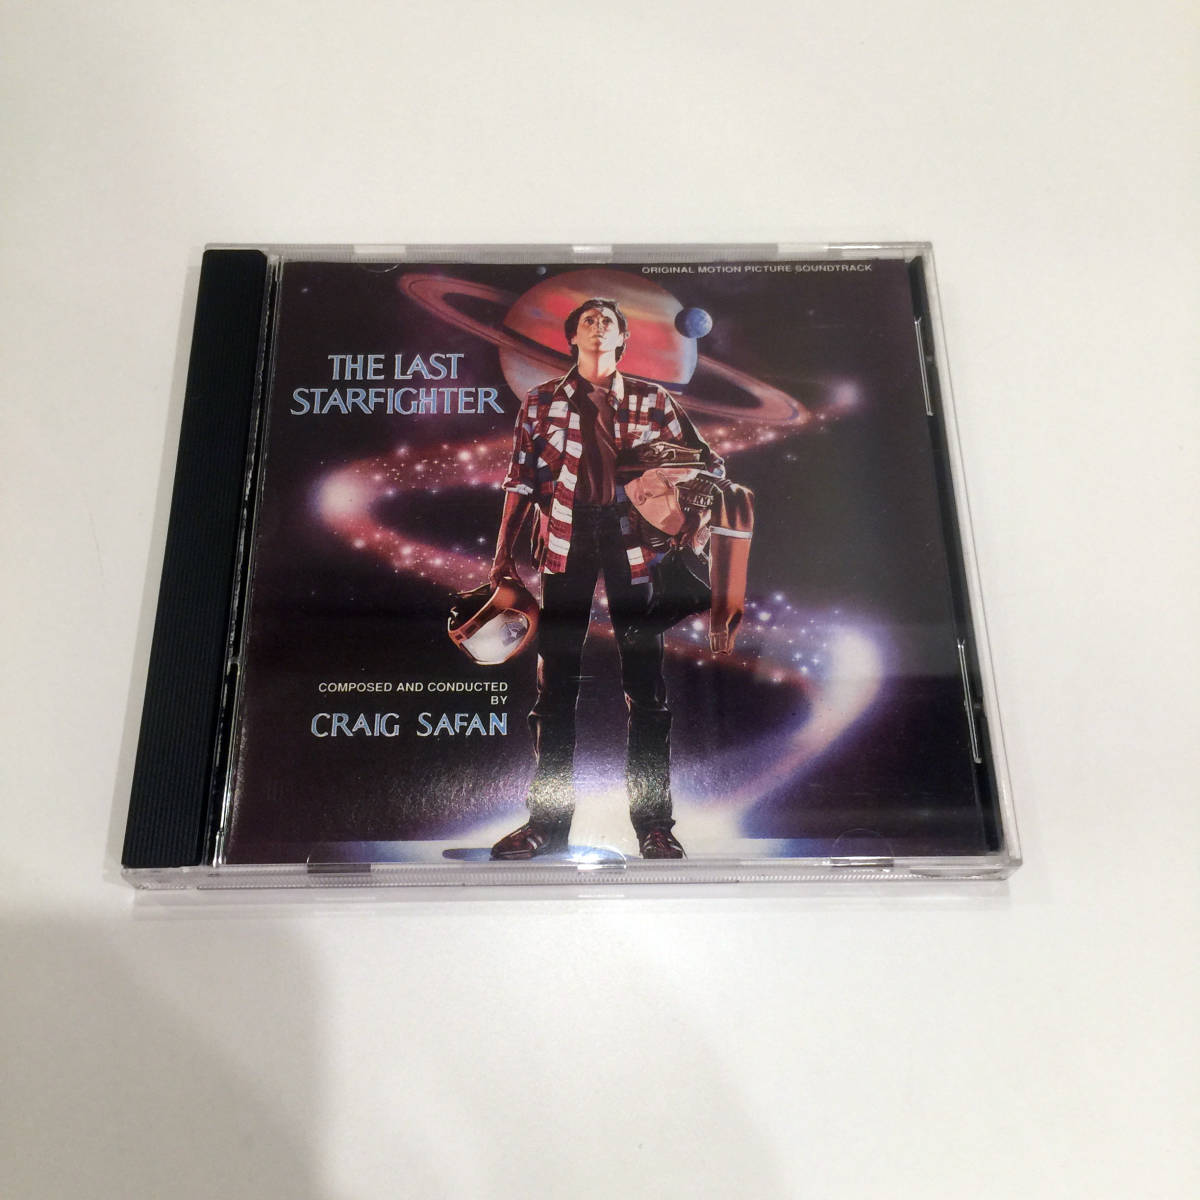 即決 CD THE LAST STARFIGHTER SF ラスト・スター・ファイター Craig Safan sound track サントラ盤 サウンドトラック SF ランス・ゲスト _画像1